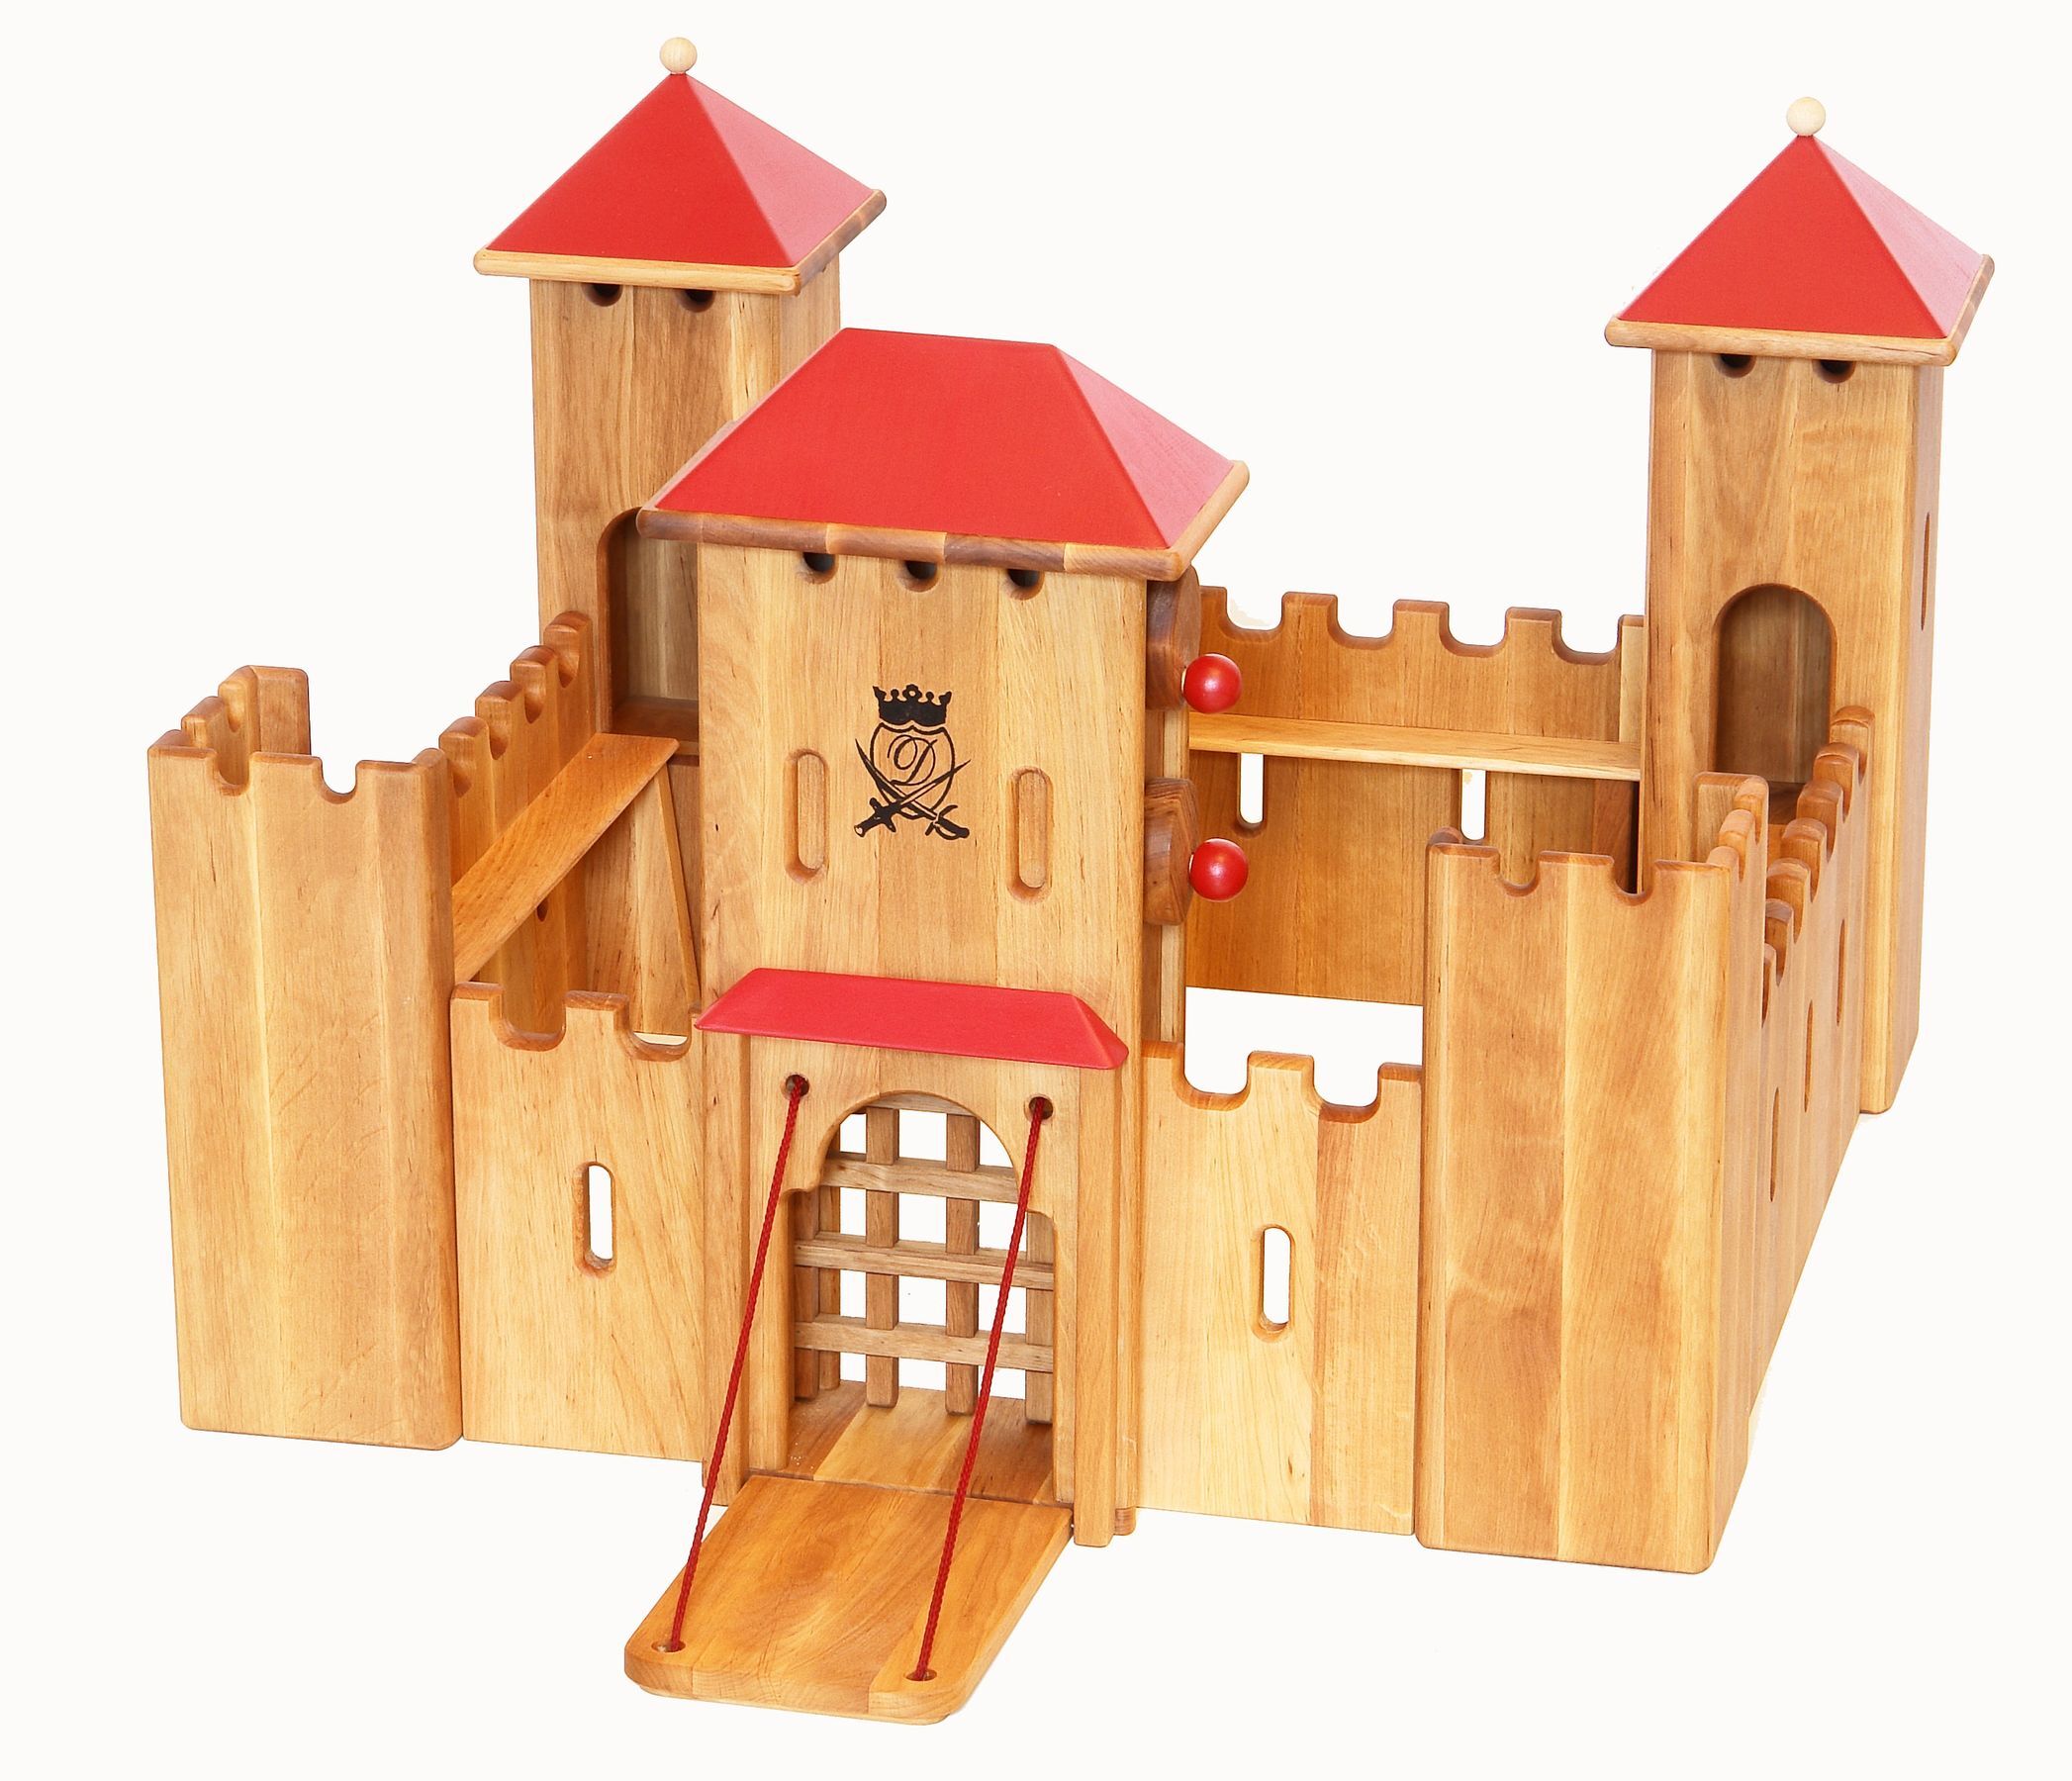 Bellissimo e solido castello dei cavalieri in legno con ponte e ferritoia mobili 931-140 